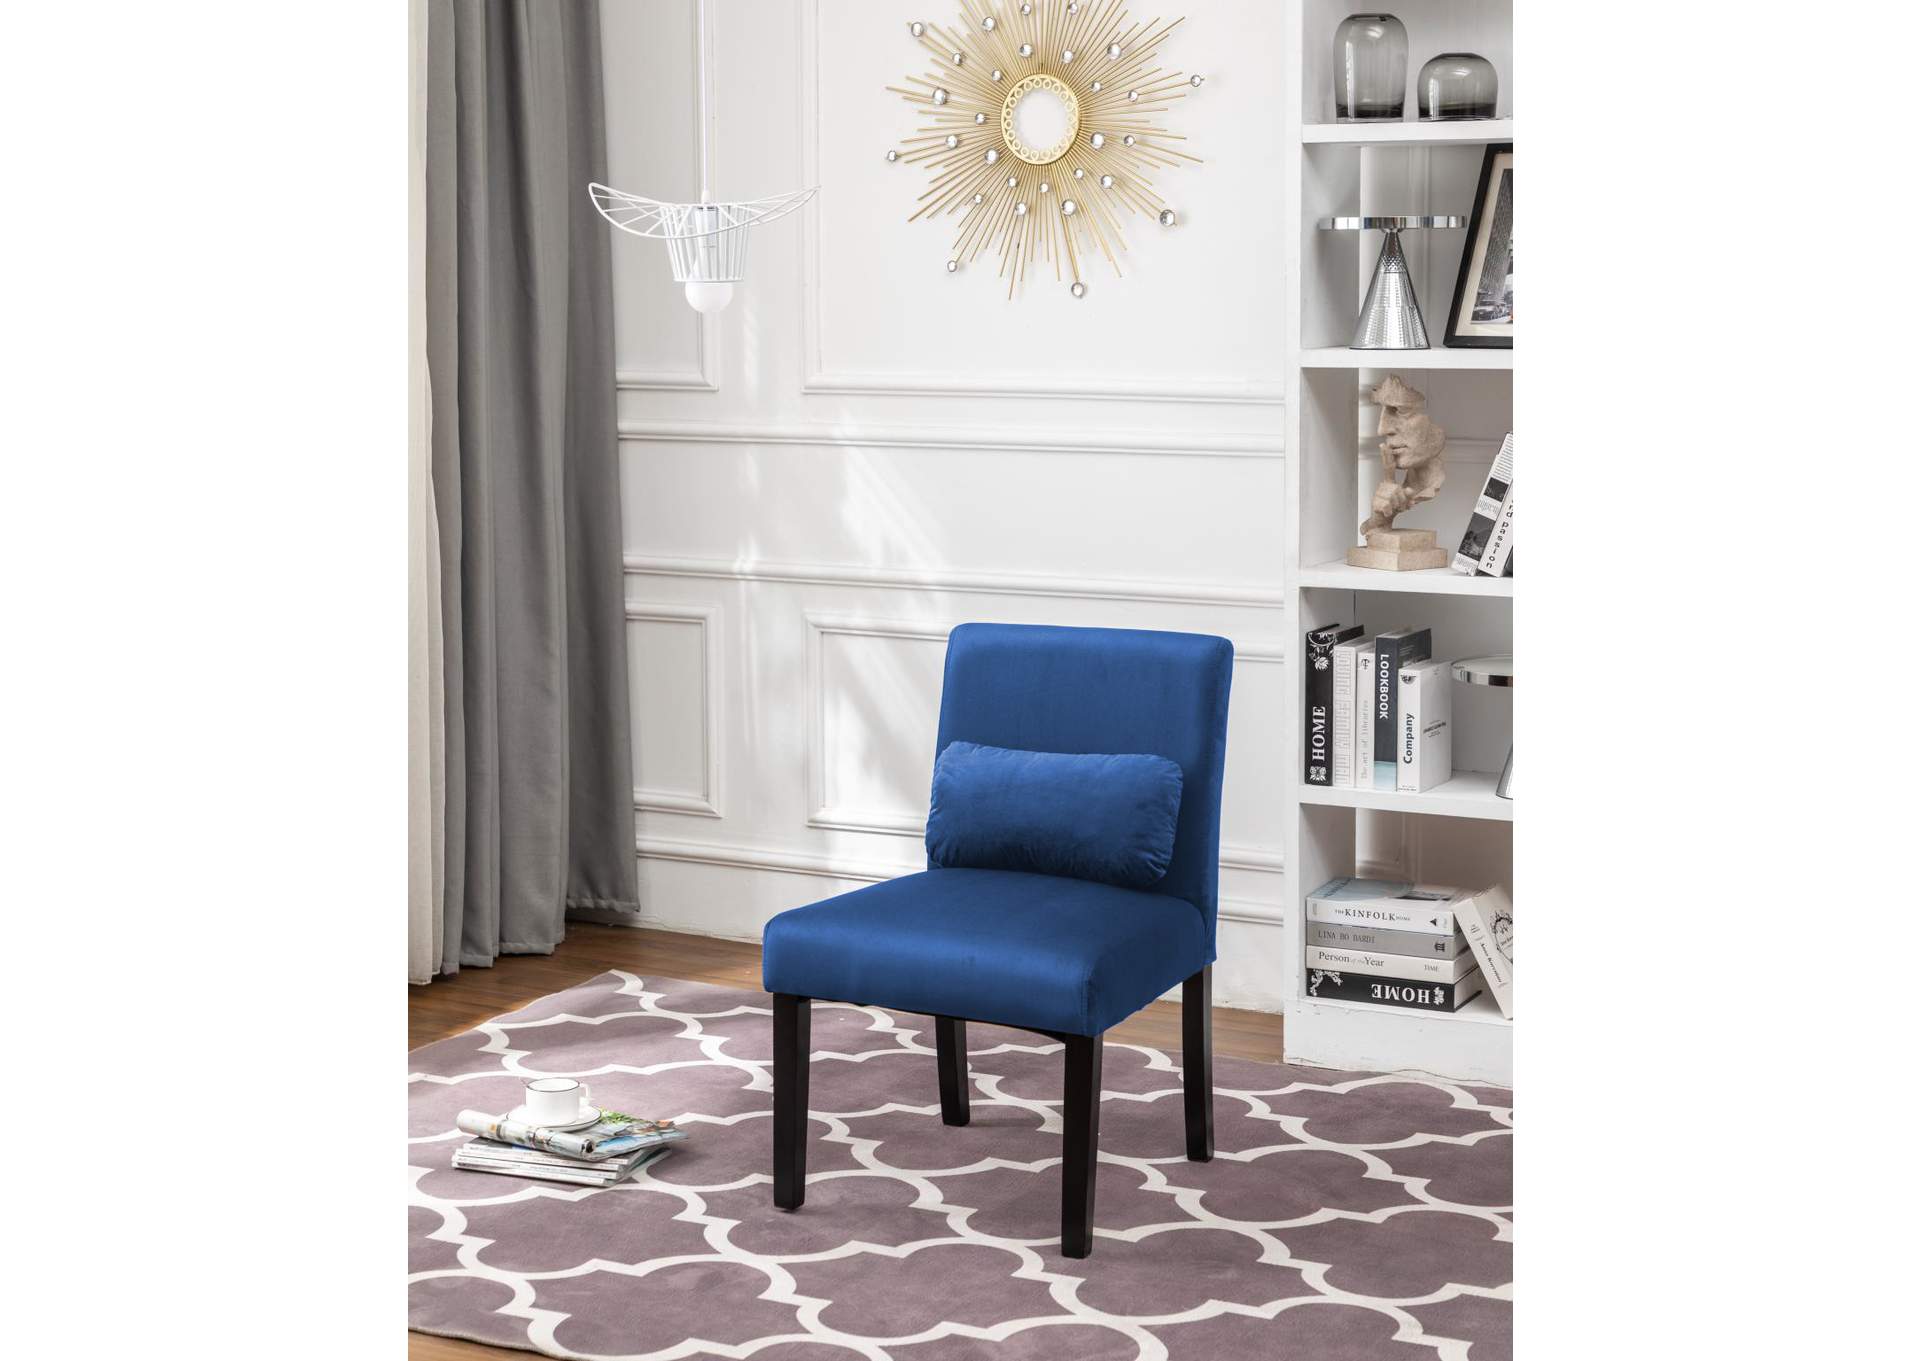 C003U Blue Chair 2-In-1Box,Global Trading